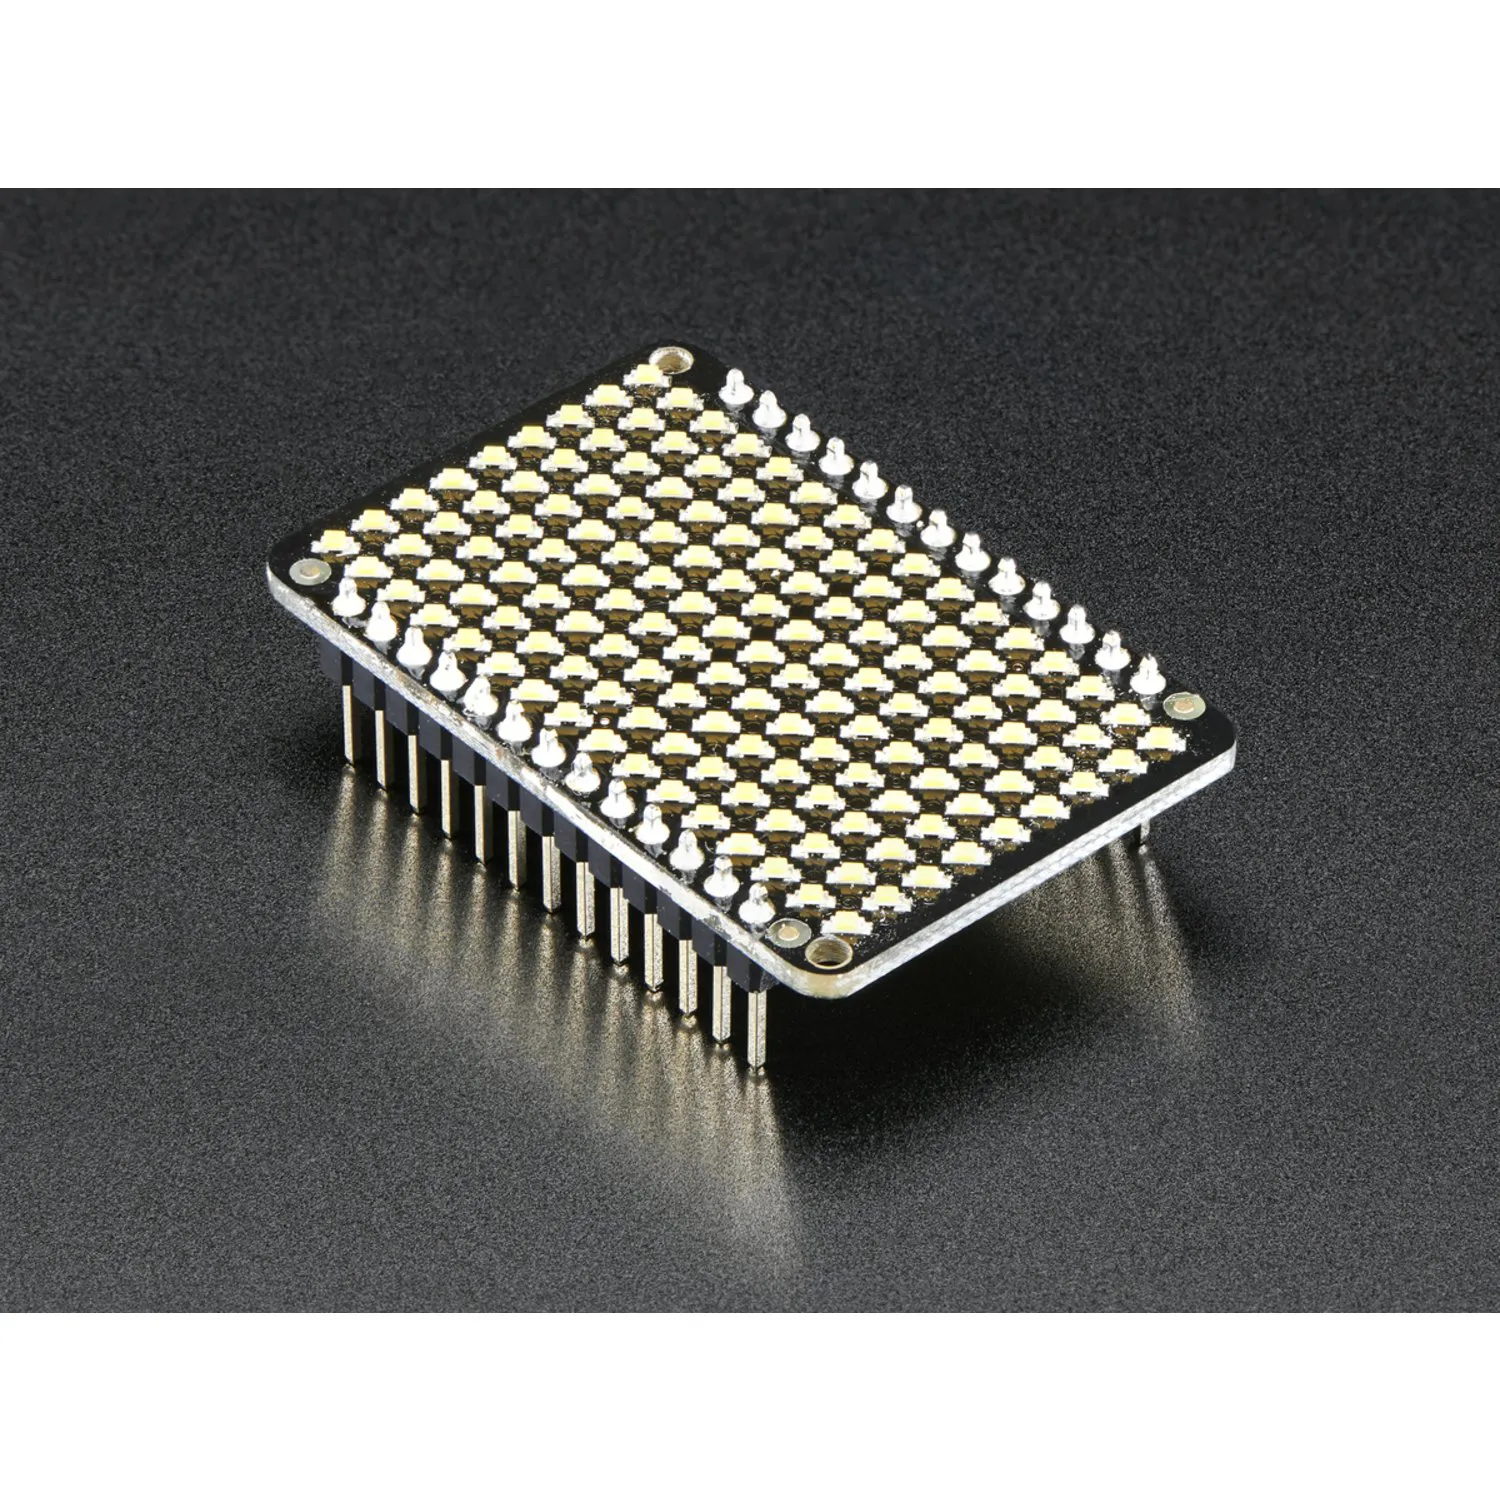 Photo of LED Charlieplexed Matrix - 9x16 LEDs - Warm White